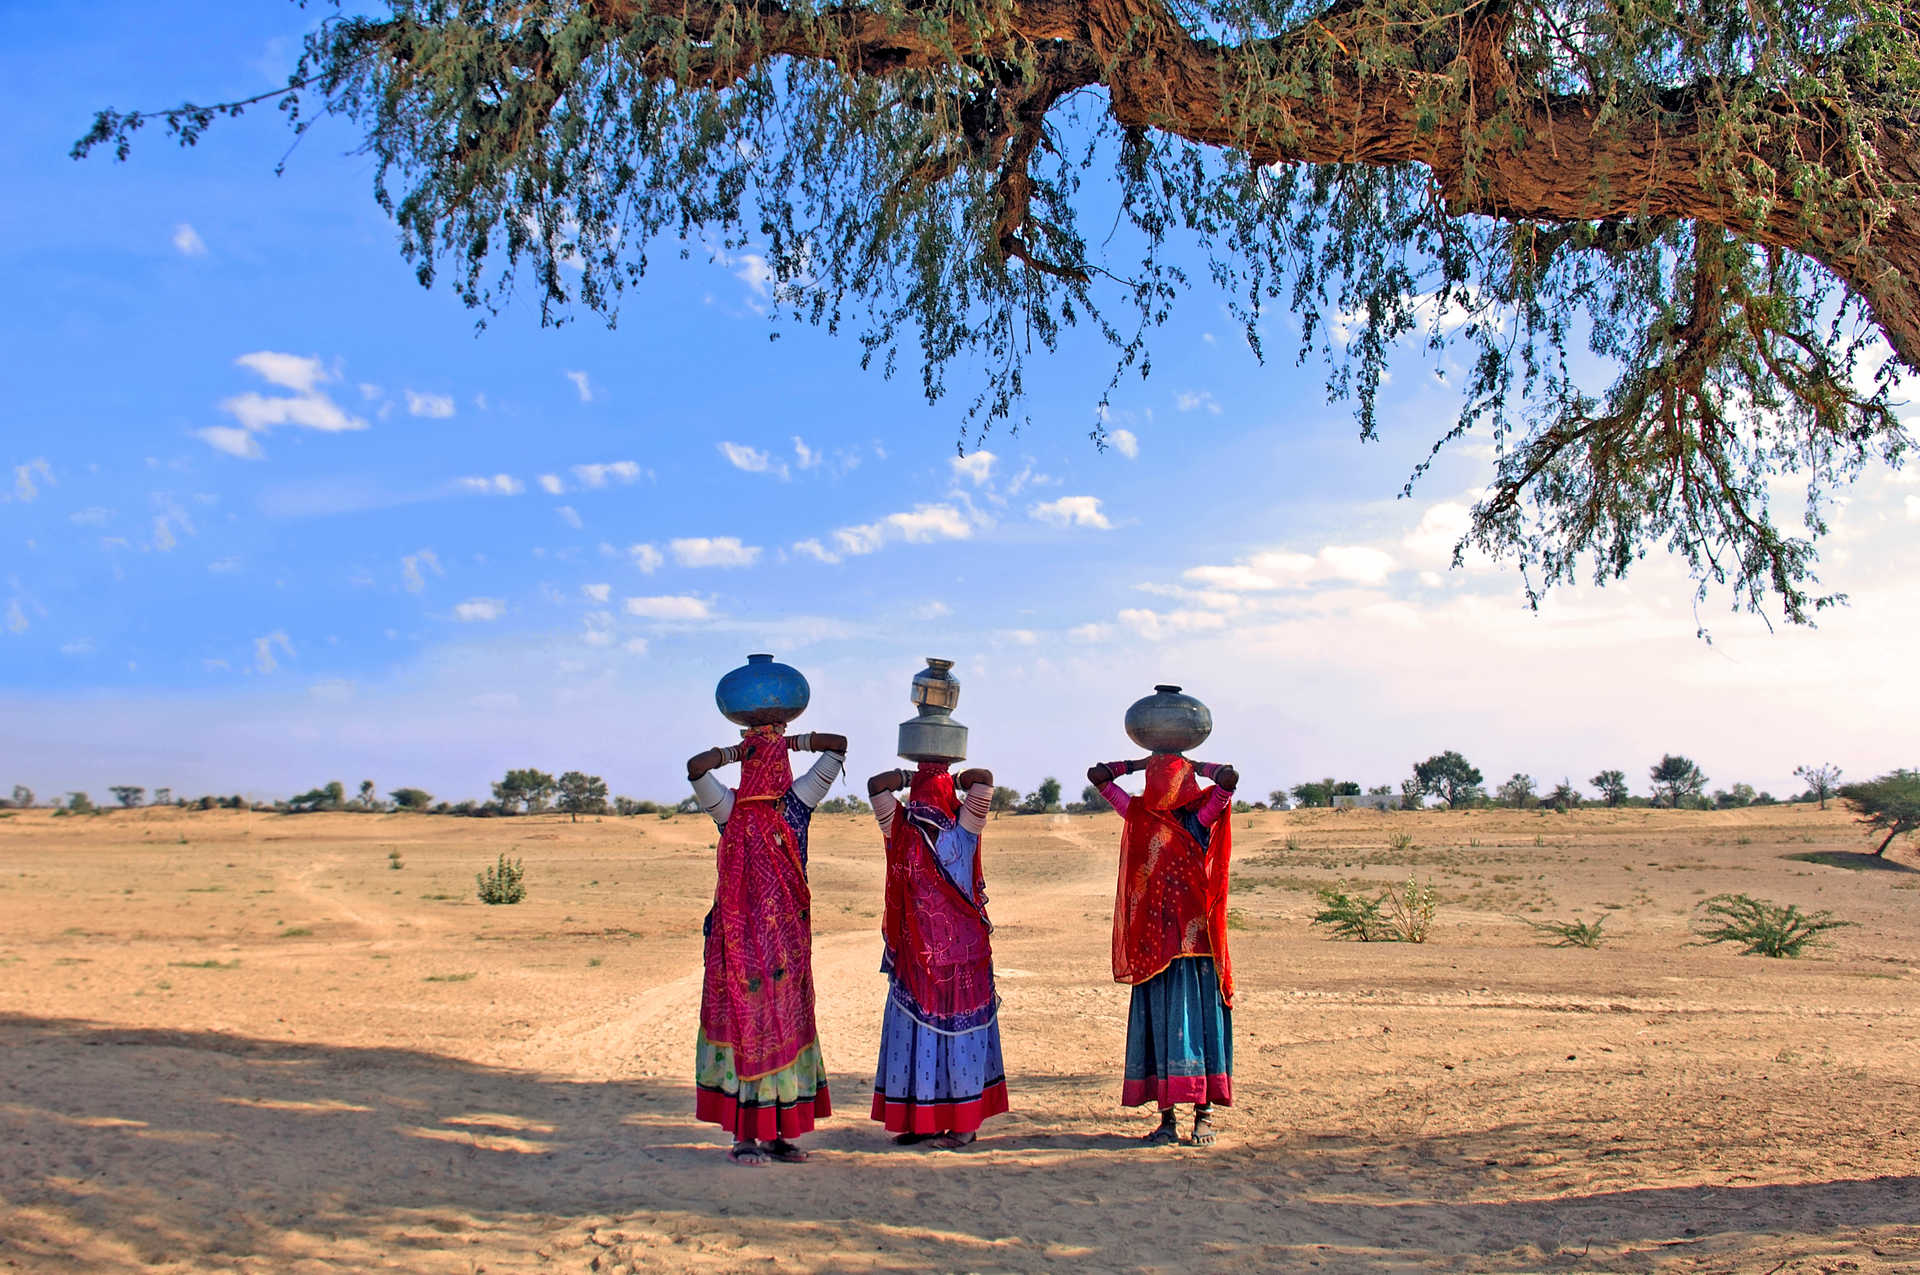 Inde, désert de Thar près de Jaisalmer  femmes transportant de l'eau